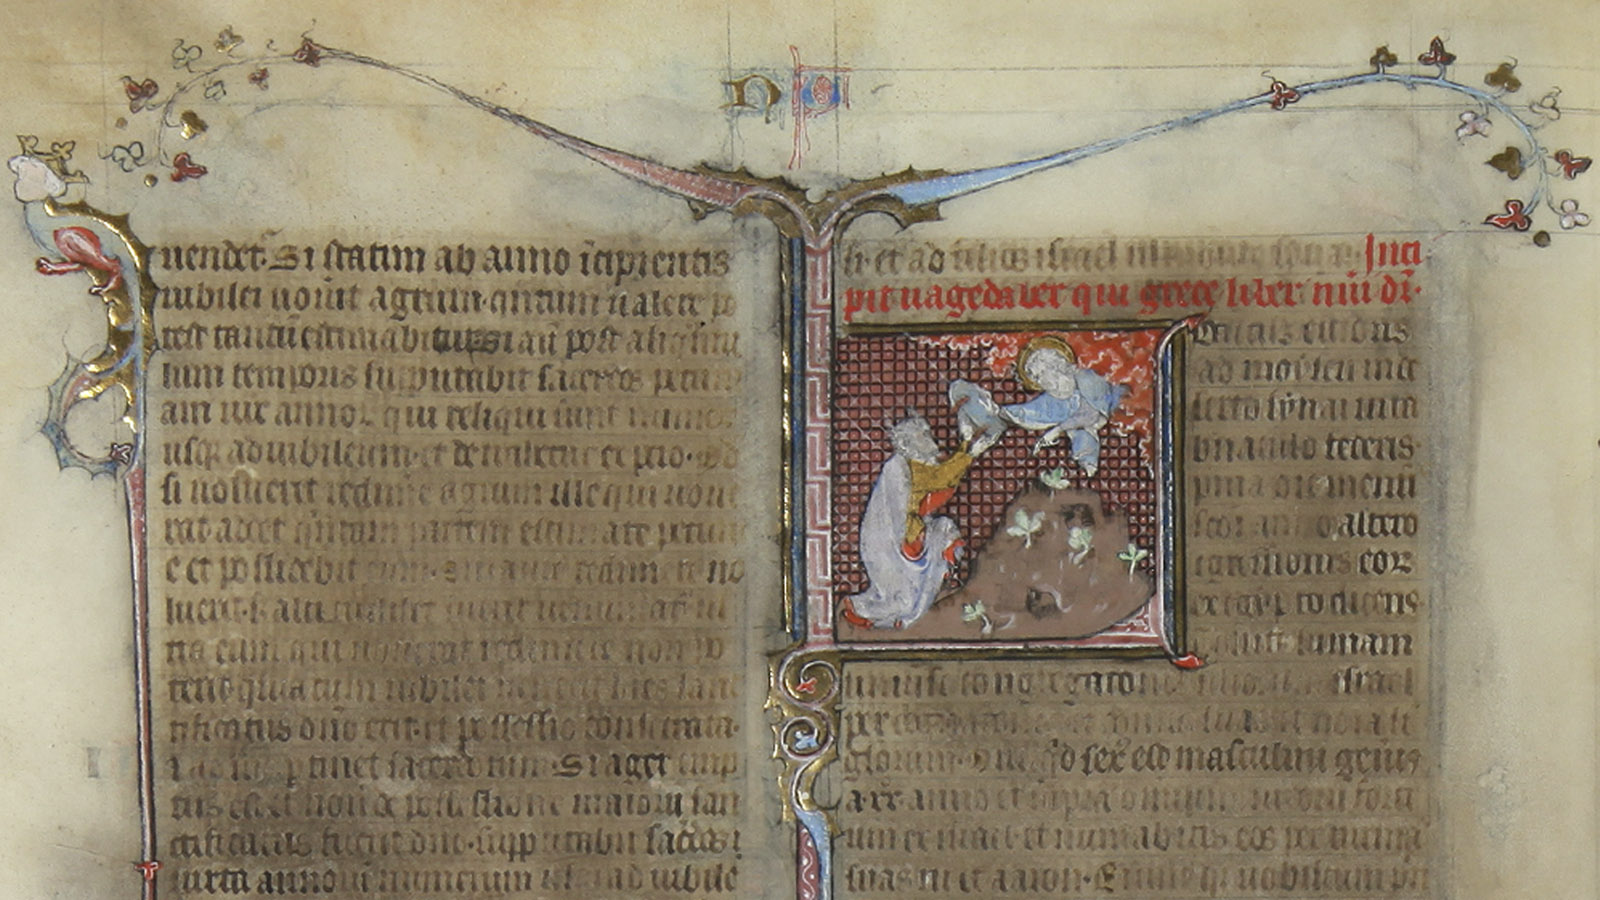 Bíblia Sagrada (Vulgata), fol. 46v (pormenor). Pinturas do Mestre da Bíblia de Jean de Papeleu, França, c. 1310-1320. Museu Calouste Gulbenkian.